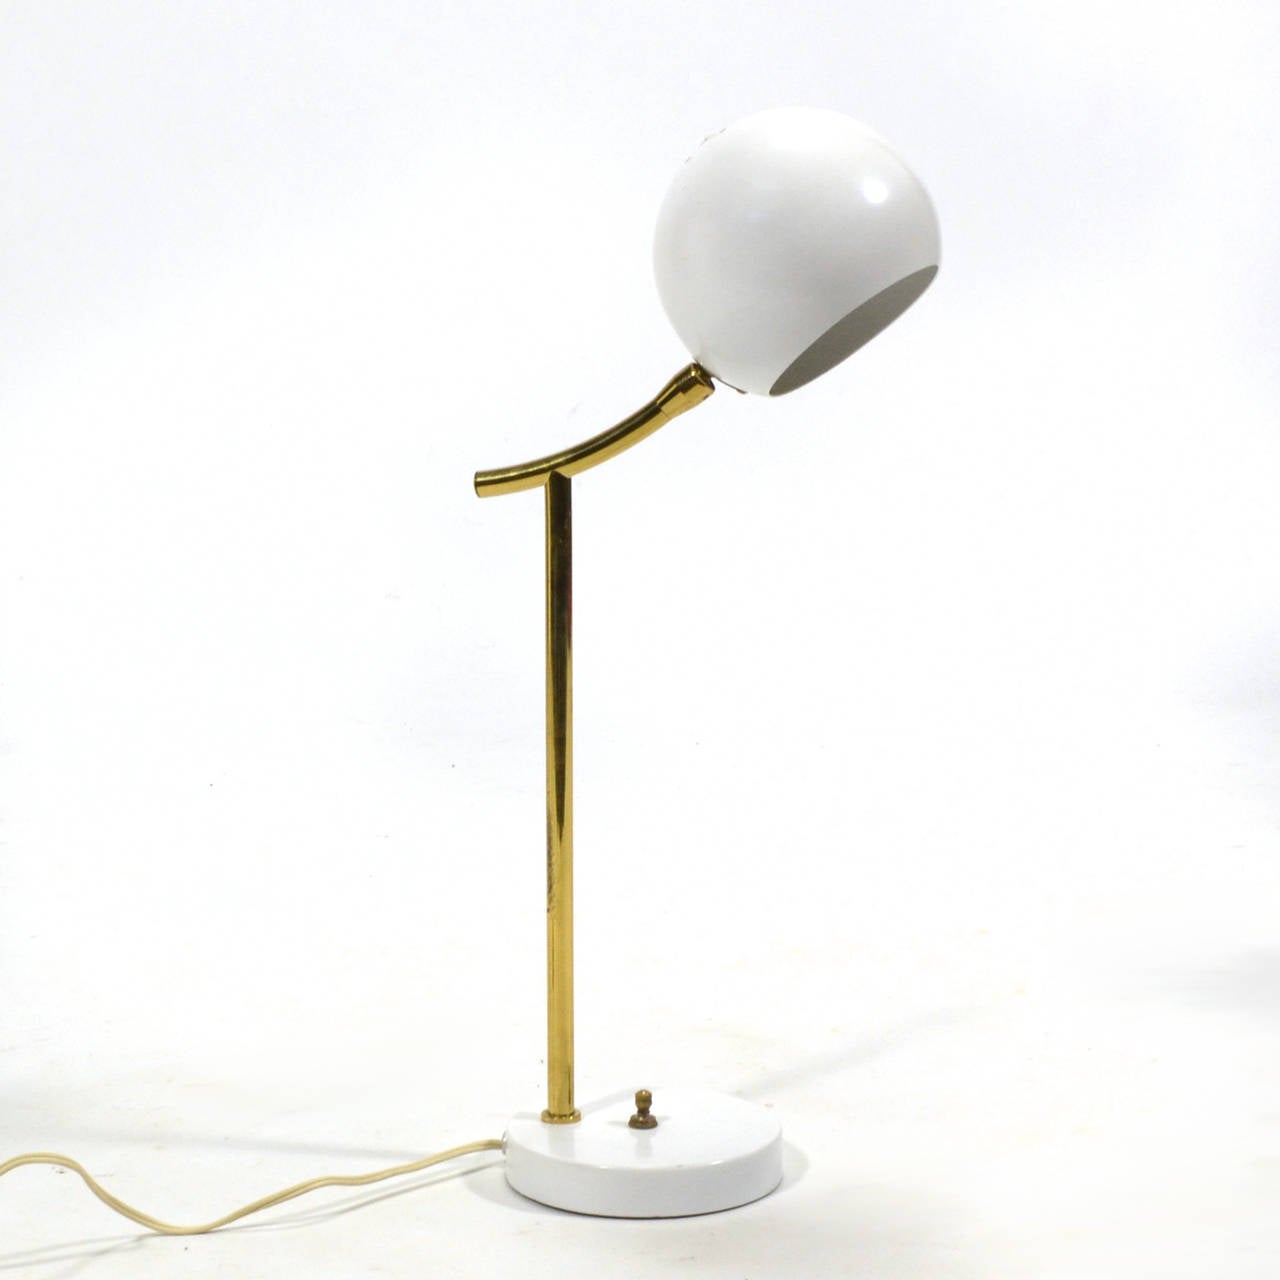 Eine kleine Lampe ist perfekt für den Schreibtisch oder den Tisch. Dieses wunderbare Design von Nessen ist sowohl verspielt als auch raffiniert. Ein weißer Sockel und Kopf sind durch einen Messingstiel oder -hals verbunden, der sowohl Umgebungslicht